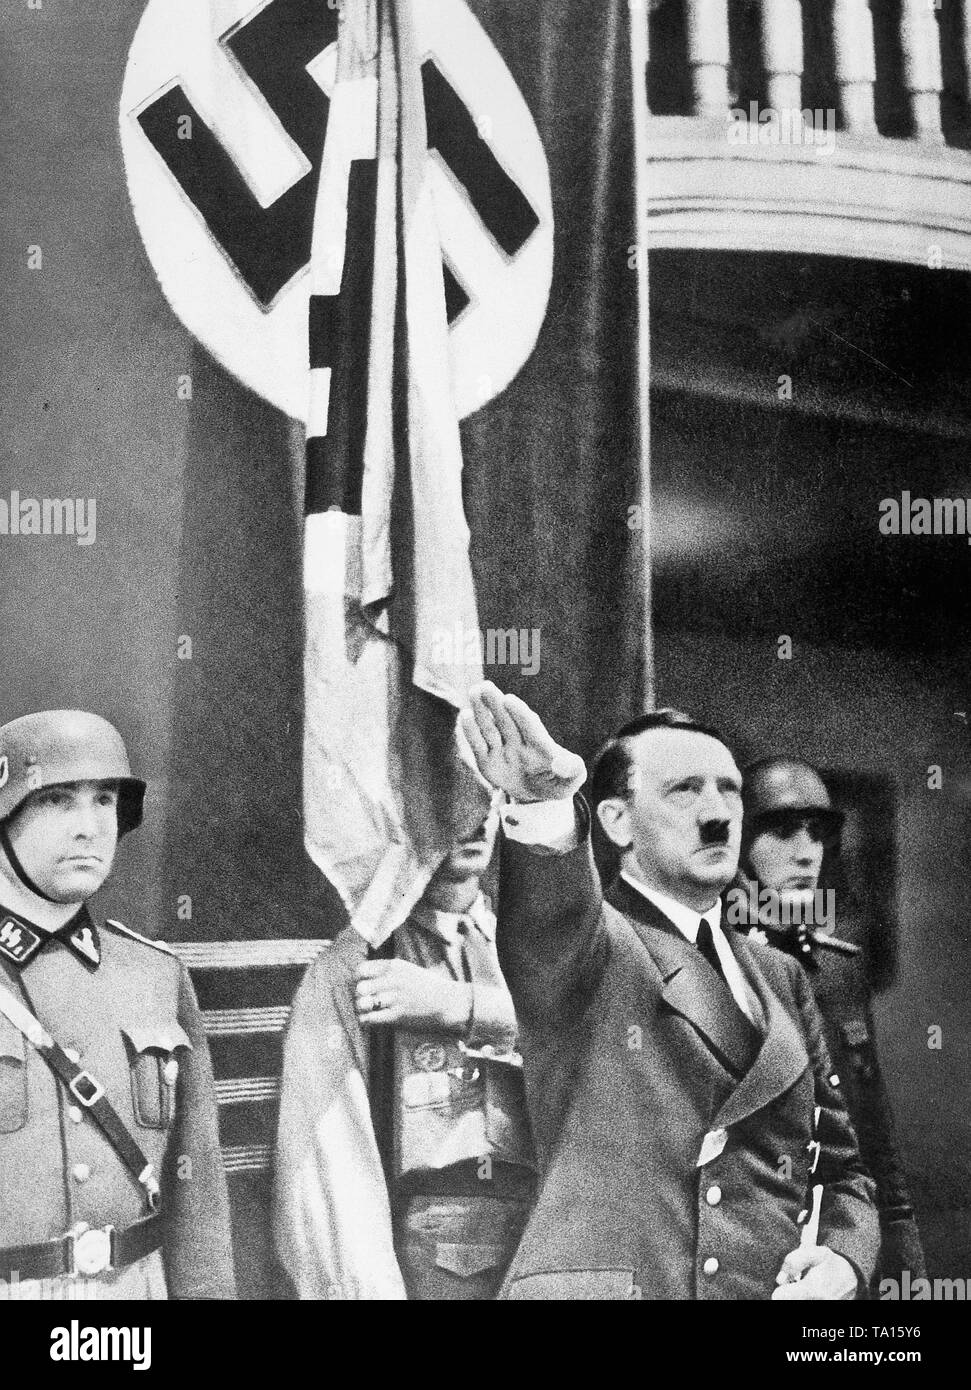 Après son discours d'Adolf Hitler à Munich le 8 septembre. Buergerbraeukeller 1939. Derrière lui le pilier qui a été installé avec des explosifs par Georg Elser. Quelques minutes après le départ de l'Hitler bombe a explosé Banque D'Images